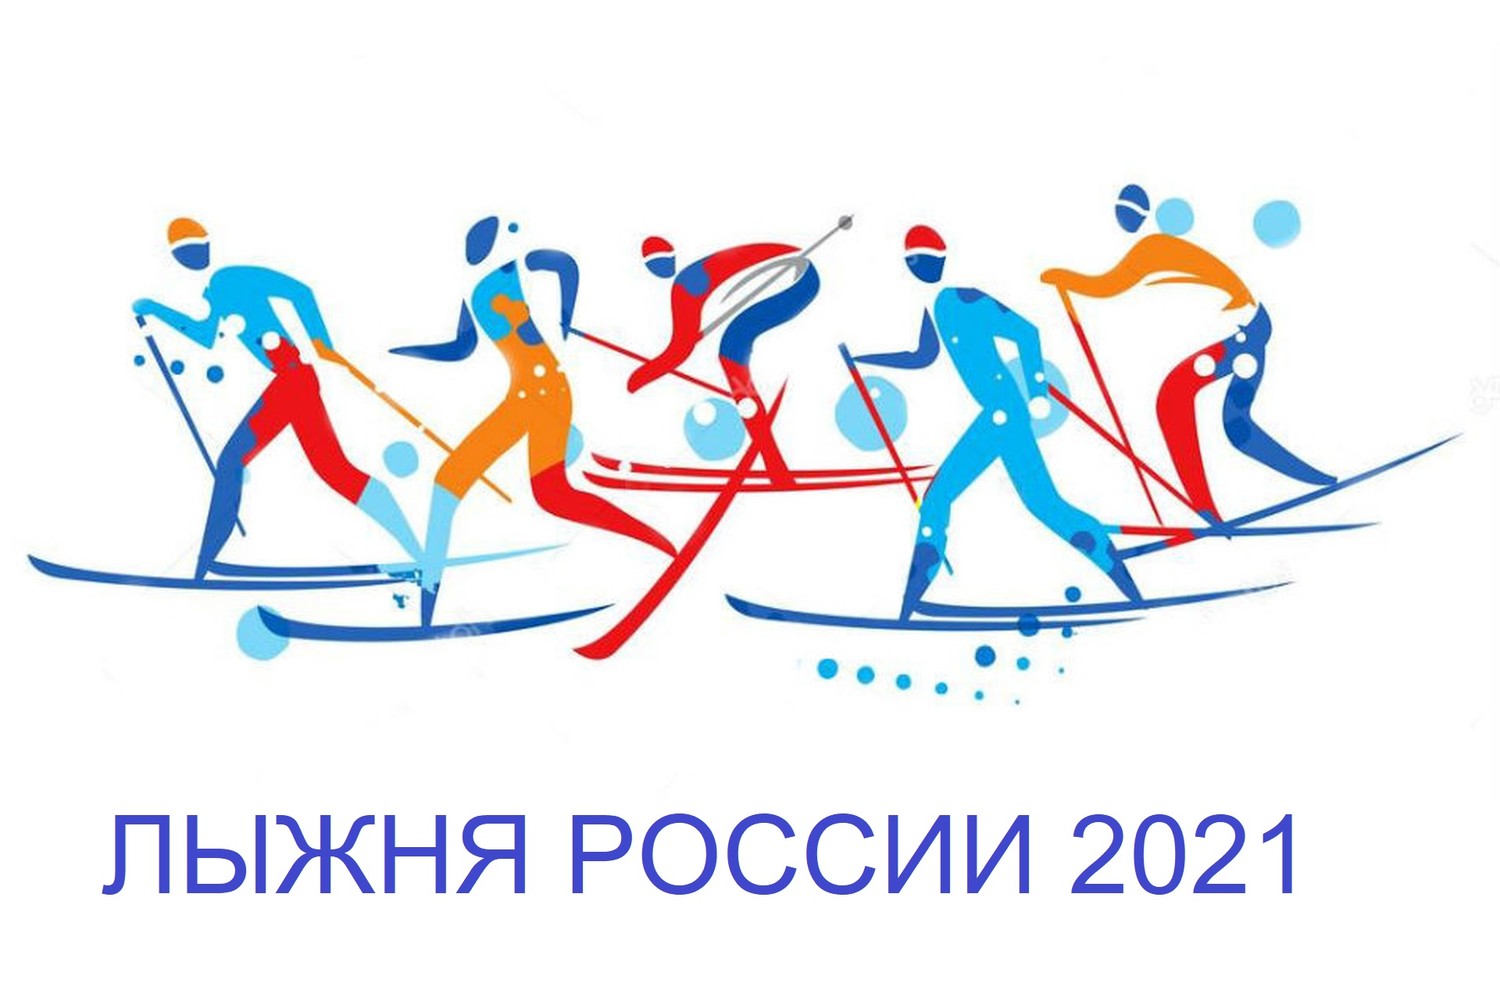 С 26 января по 13 февраля 2021 года прошла Всероссийская массовая лыжная гонка «Лыжня России 2021», более 300 жителей Соликамского городского округа пробежали заявленную дистанцию.